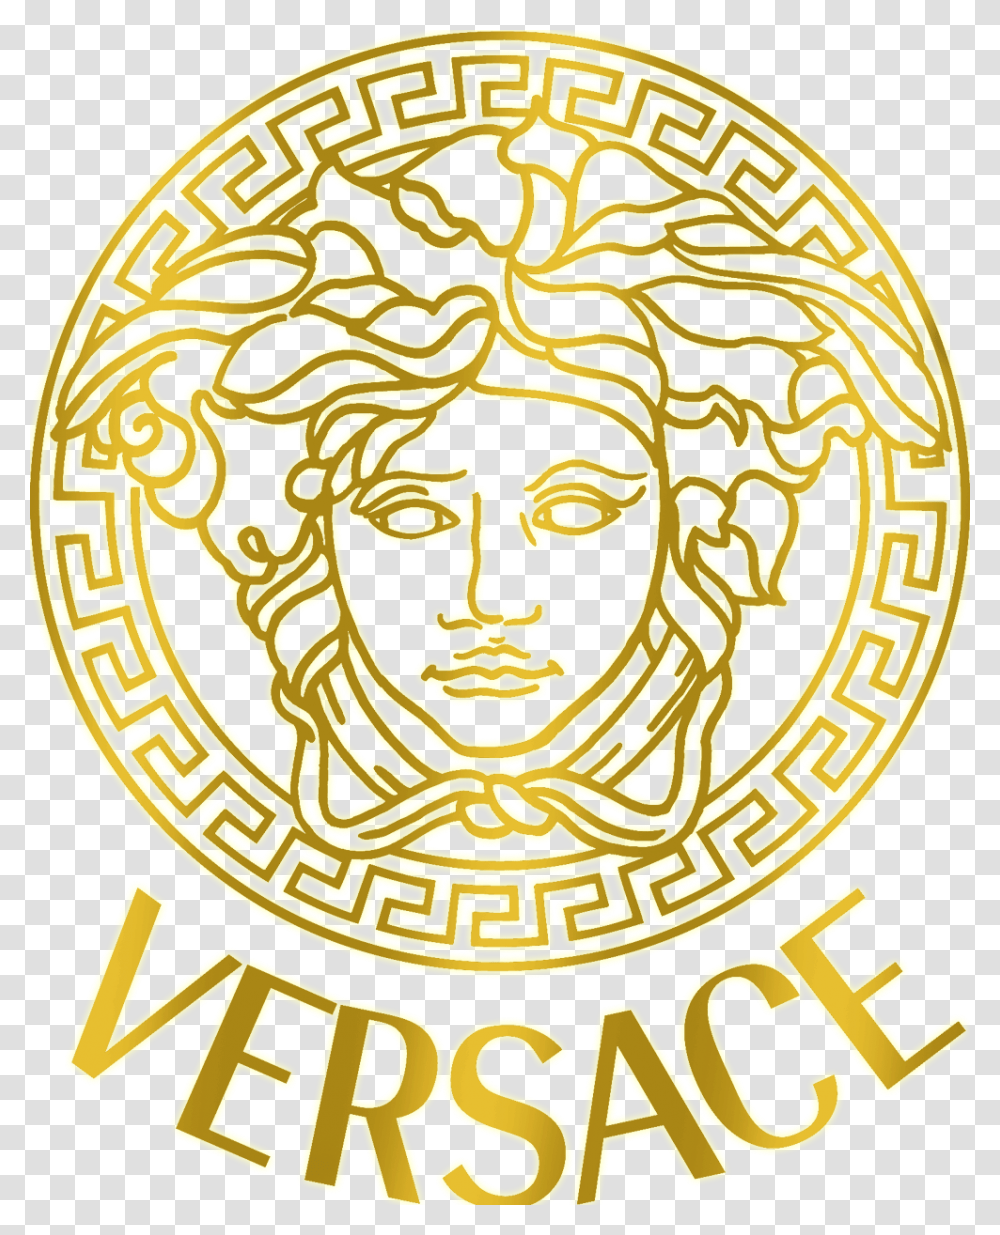 Логотип Версаче 1996